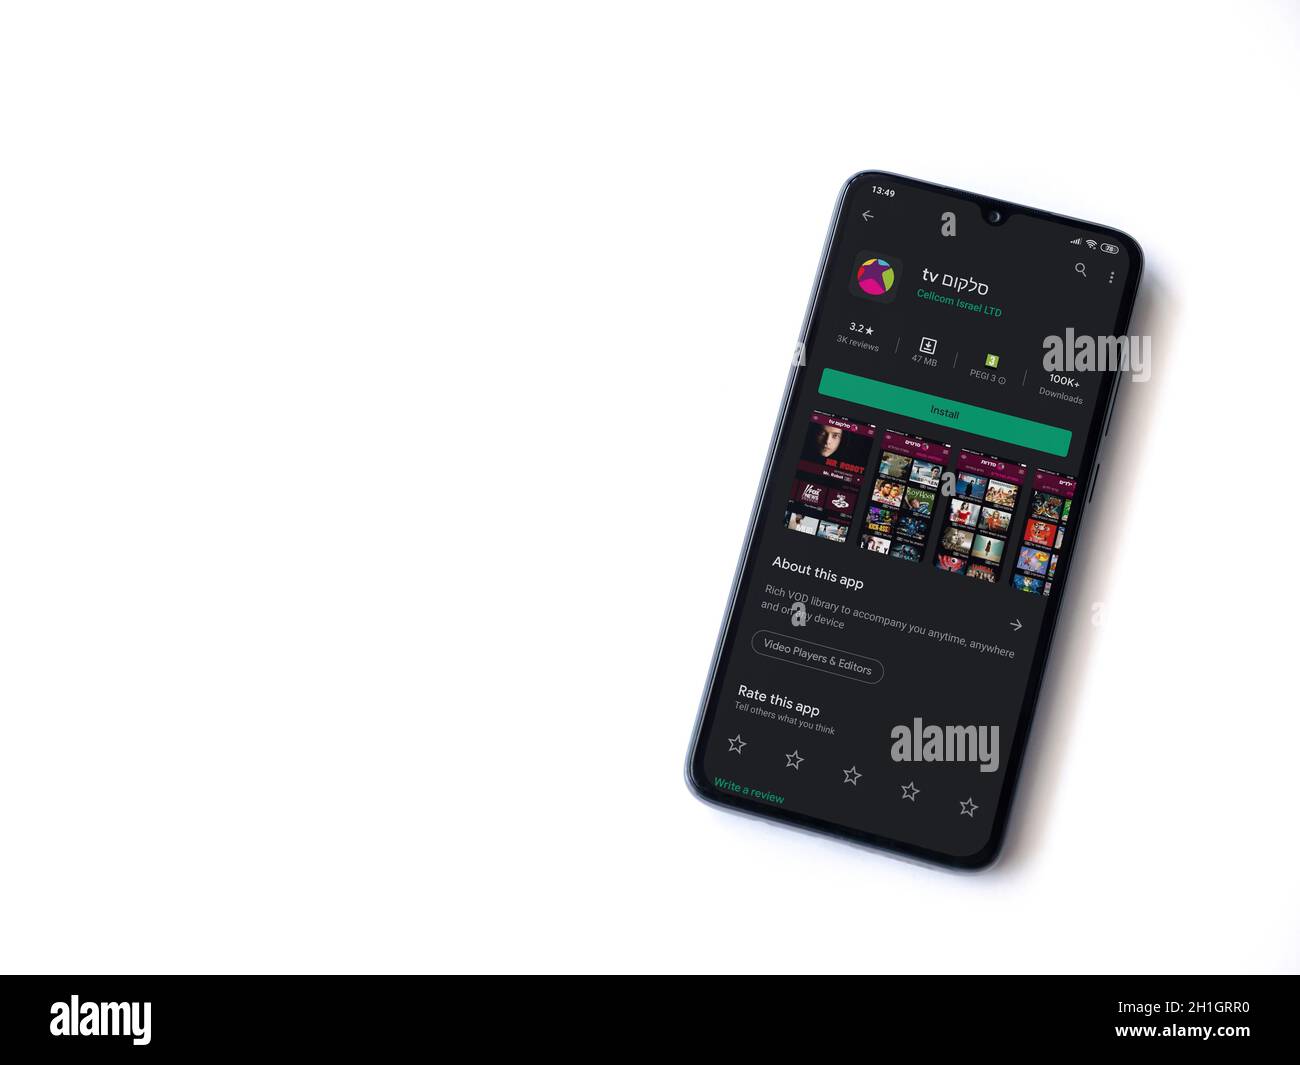 LOD, Israele - 8 luglio 2020: L'app Cellcom TV riproduce la pagina del negozio sul display di uno smartphone nero isolato su sfondo bianco. Vista dall'alto in piano Foto Stock